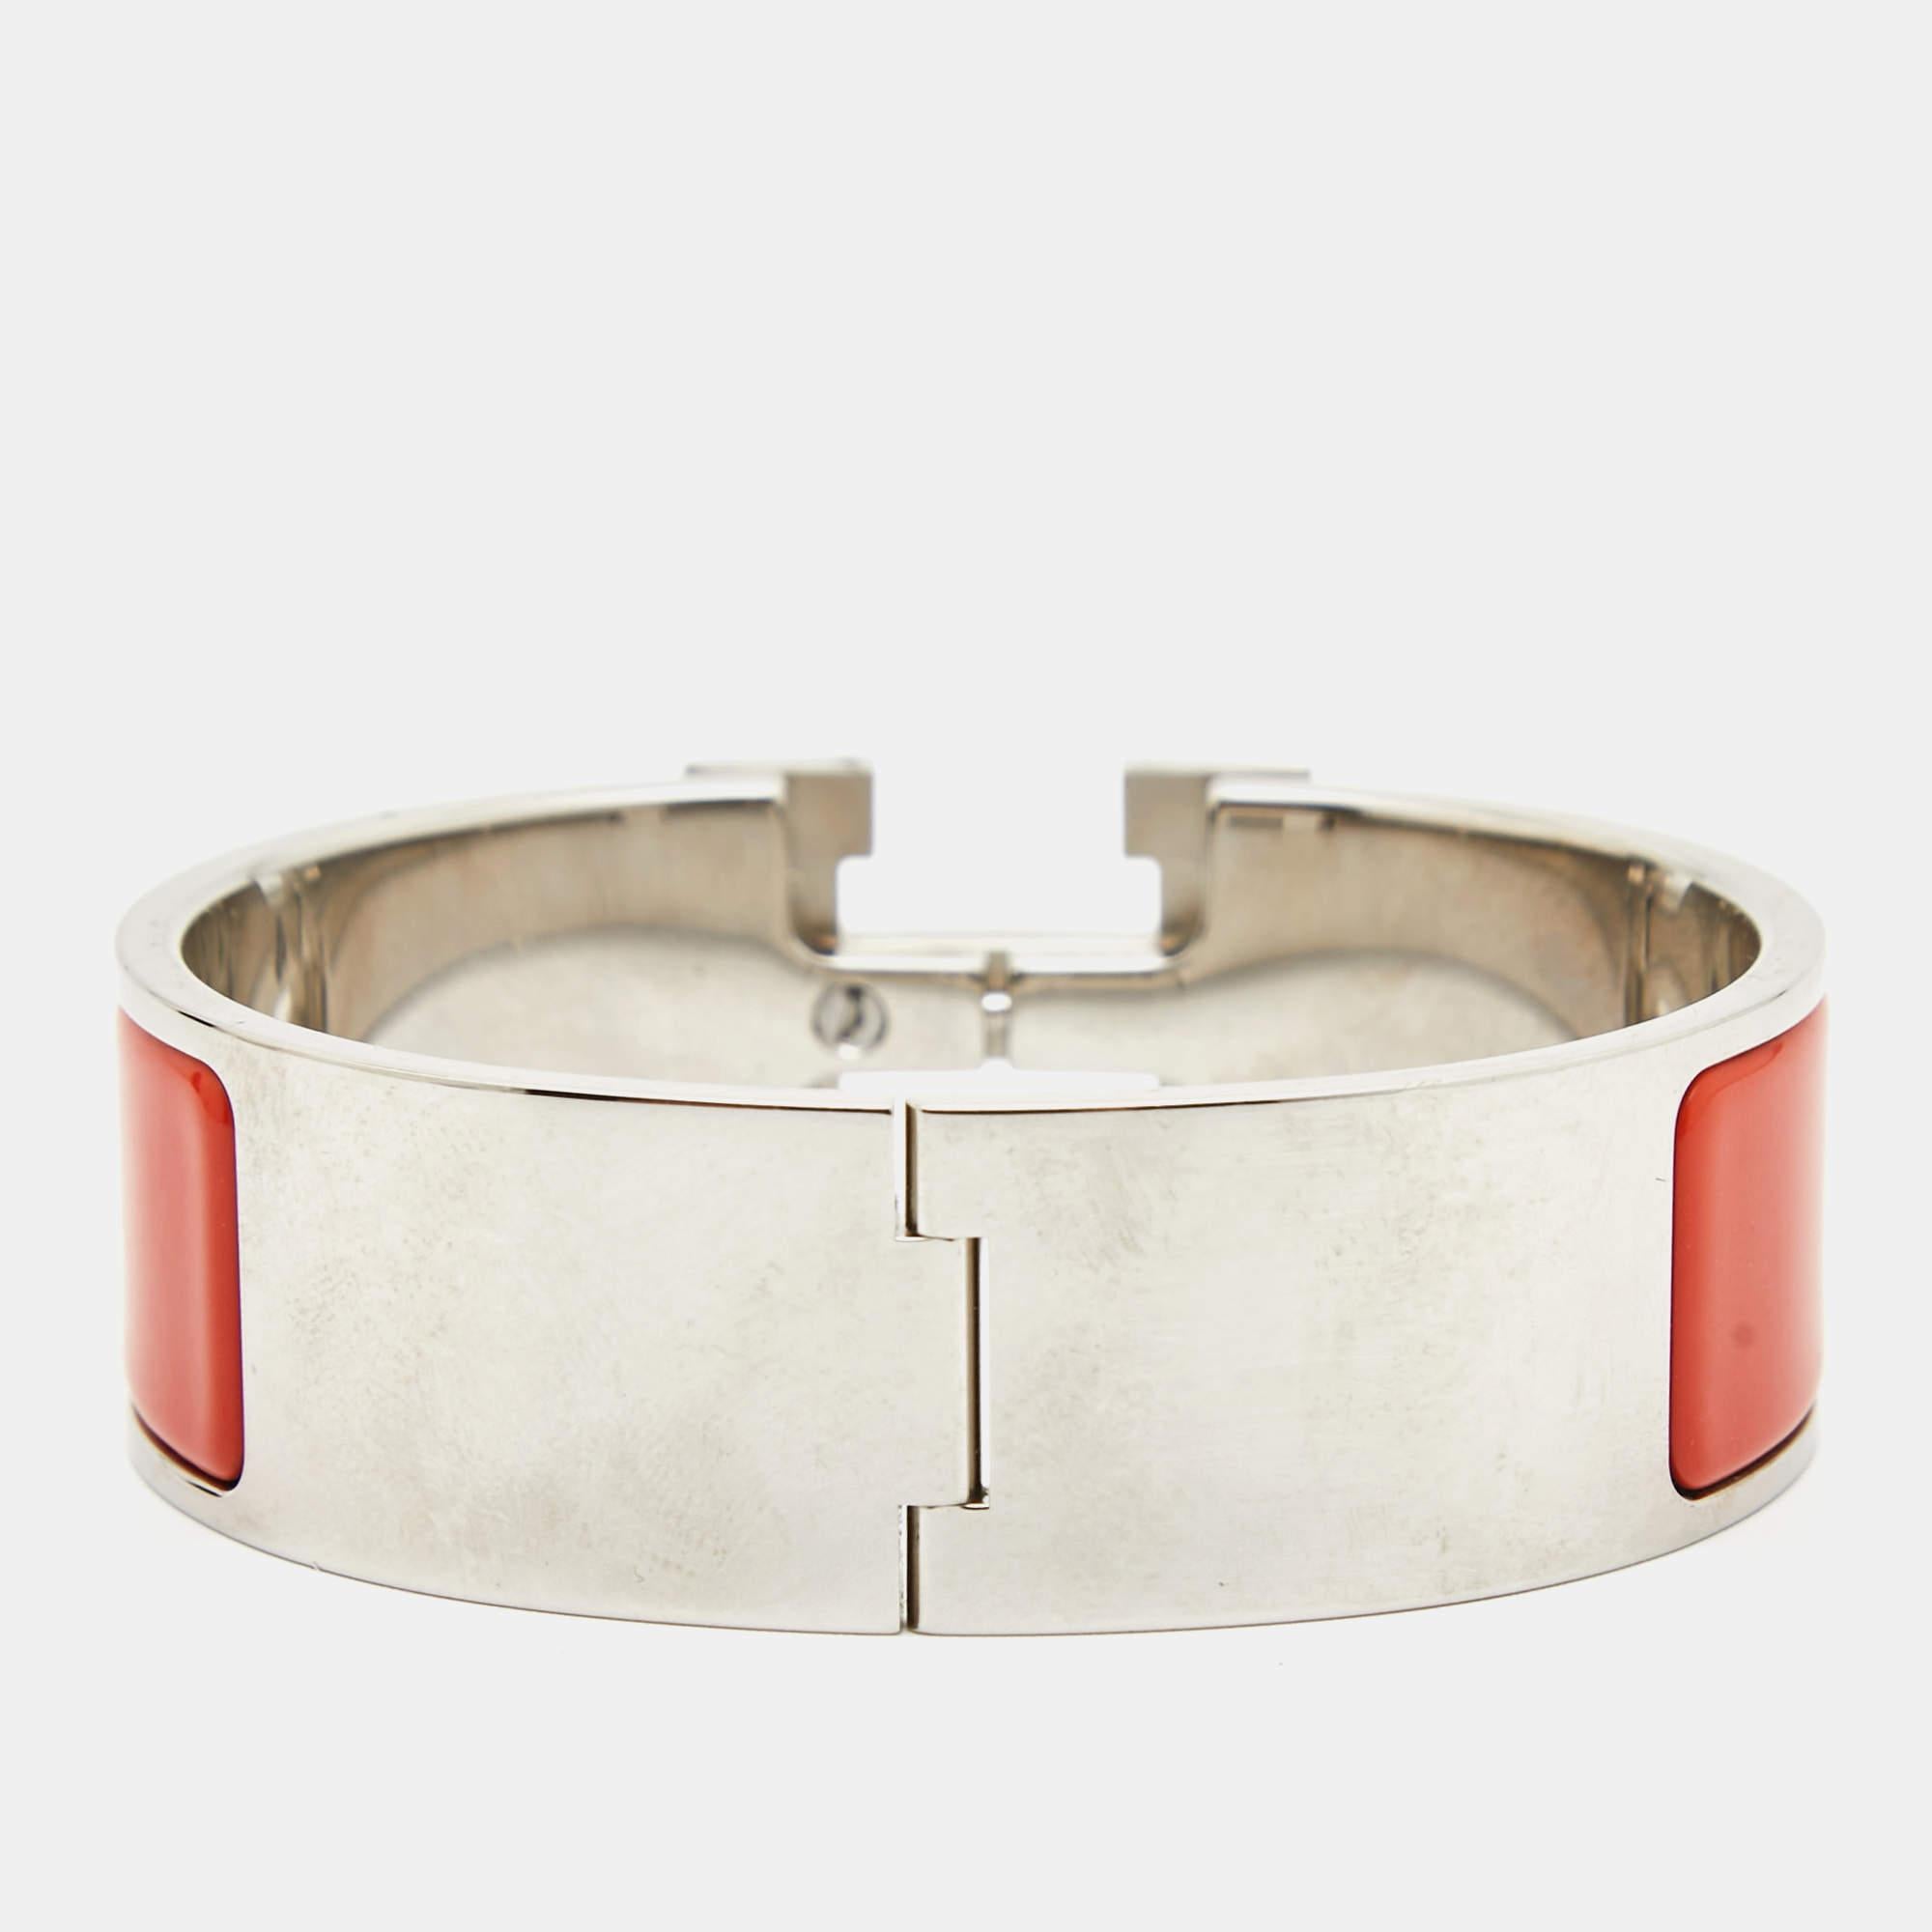 Le bracelet Clic Clac H d'Hermès est un bijou exquis. Le bracelet en émail brillant est doté d'un fermoir en forme de H plaqué palladium, créant un contraste saisissant. Cet accessoire luxueux et élégant incarne le style intemporel et la